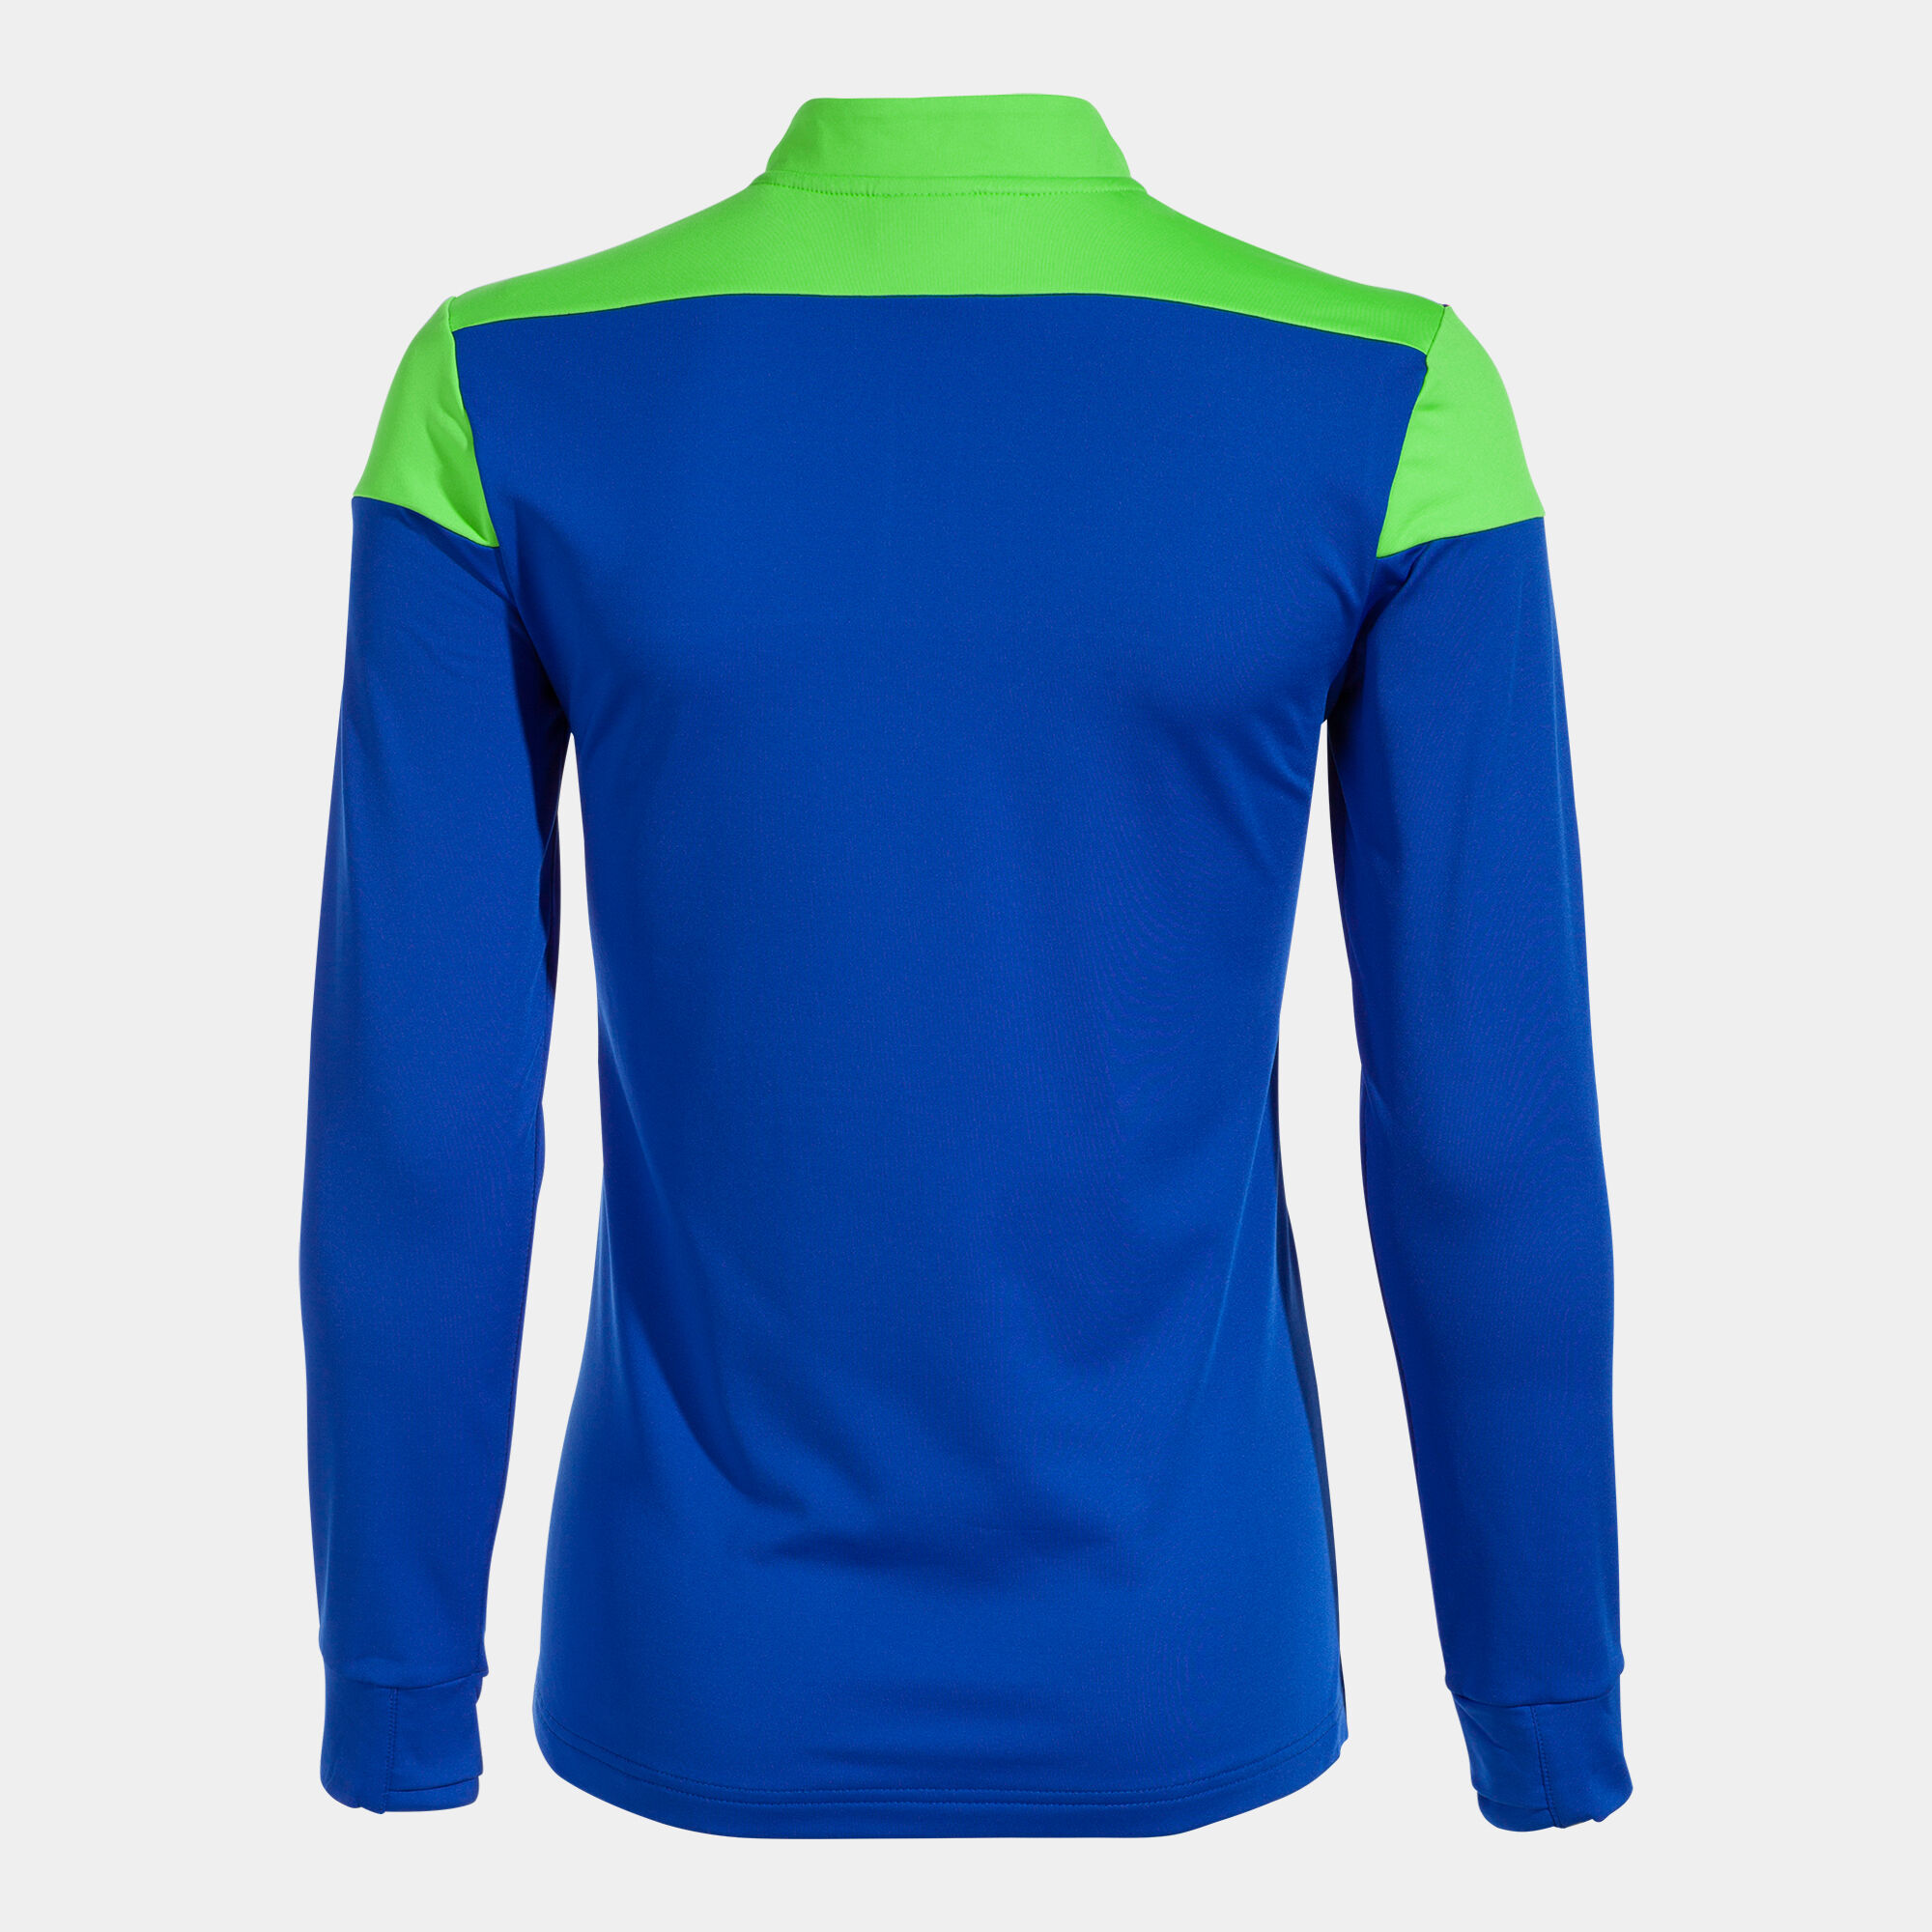 Sweat-shirt femme Elite X bleu roi vert fluo